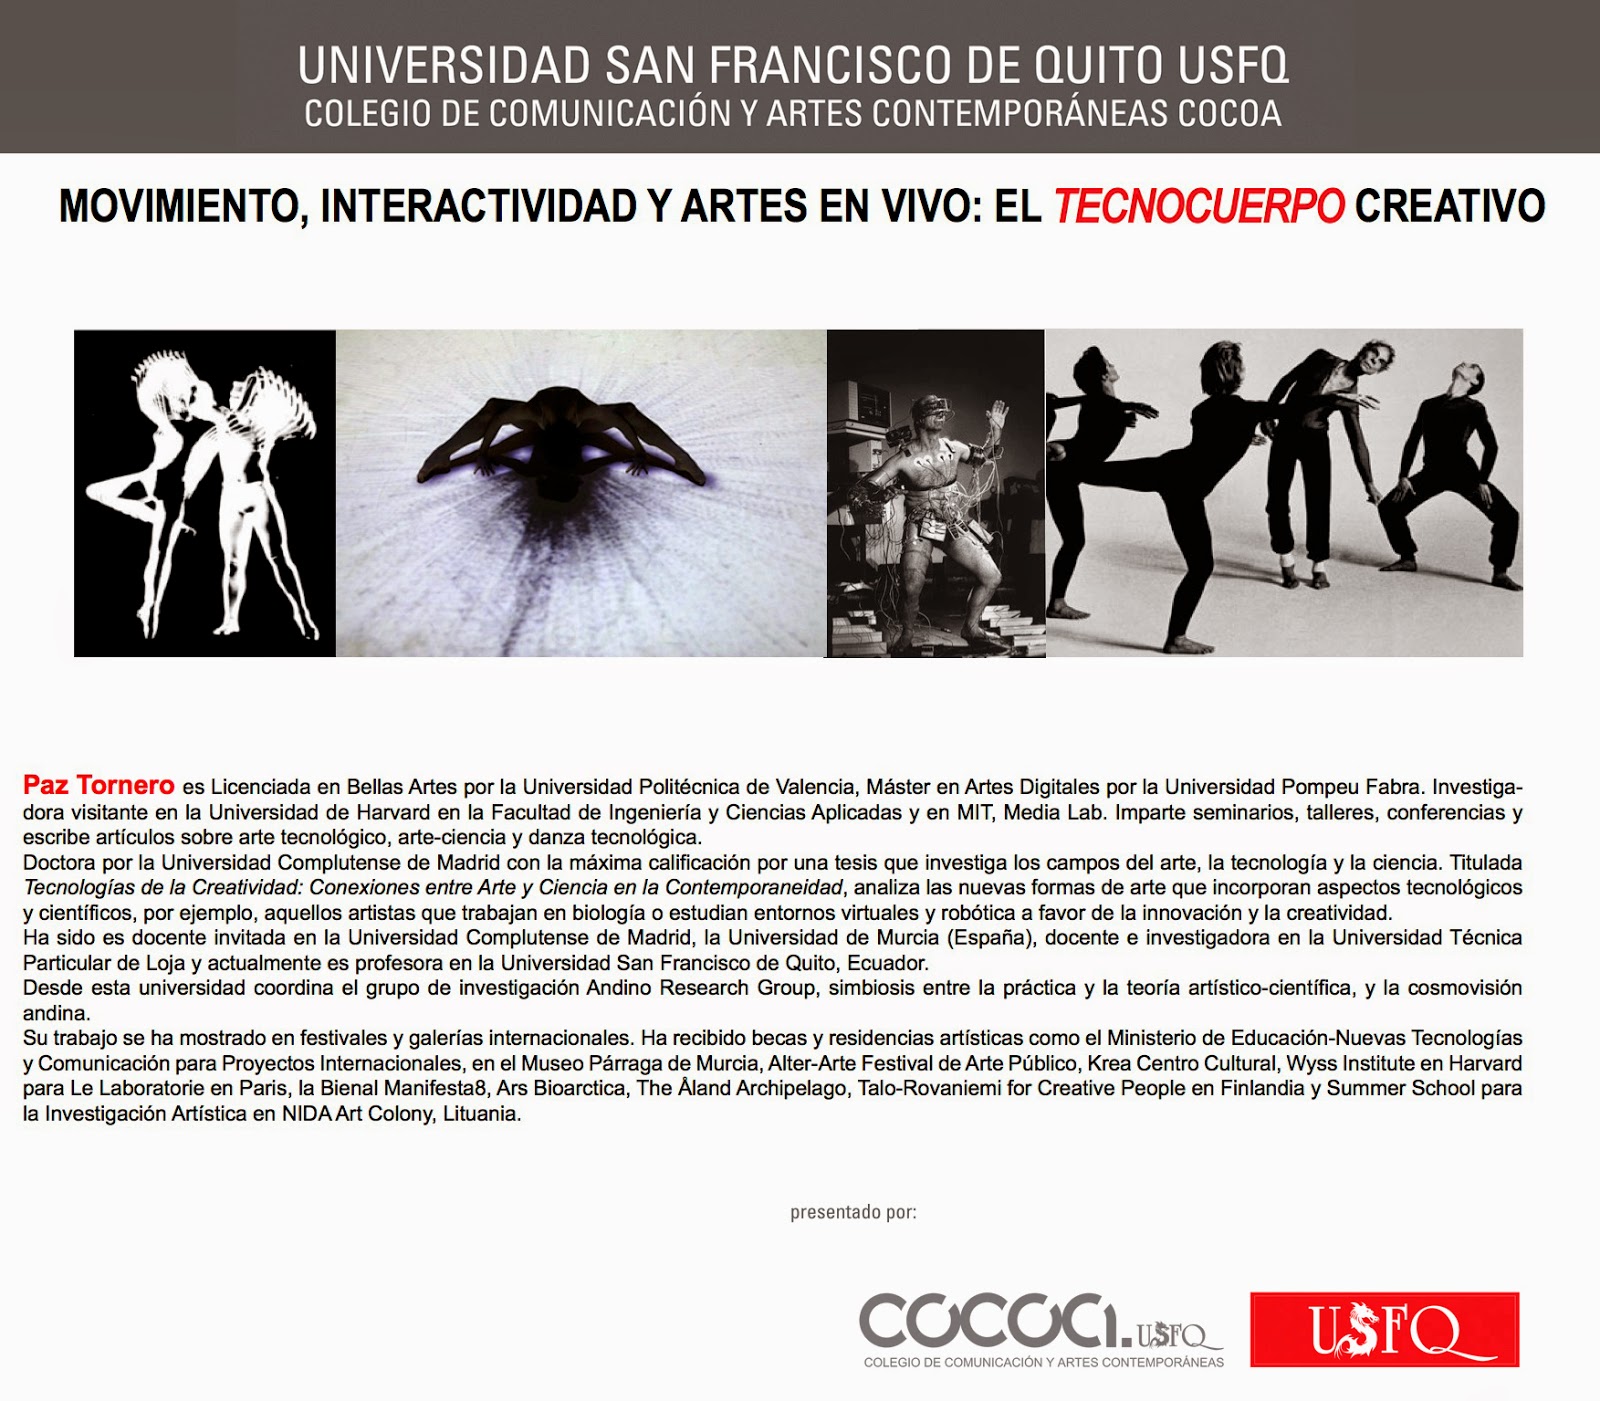 El COCOA-USFQ invita a Movimiento,Interactividad y Artes en Vivo: “El Tecnocuerpo Creativo" 16 marzo, 13h00. M210